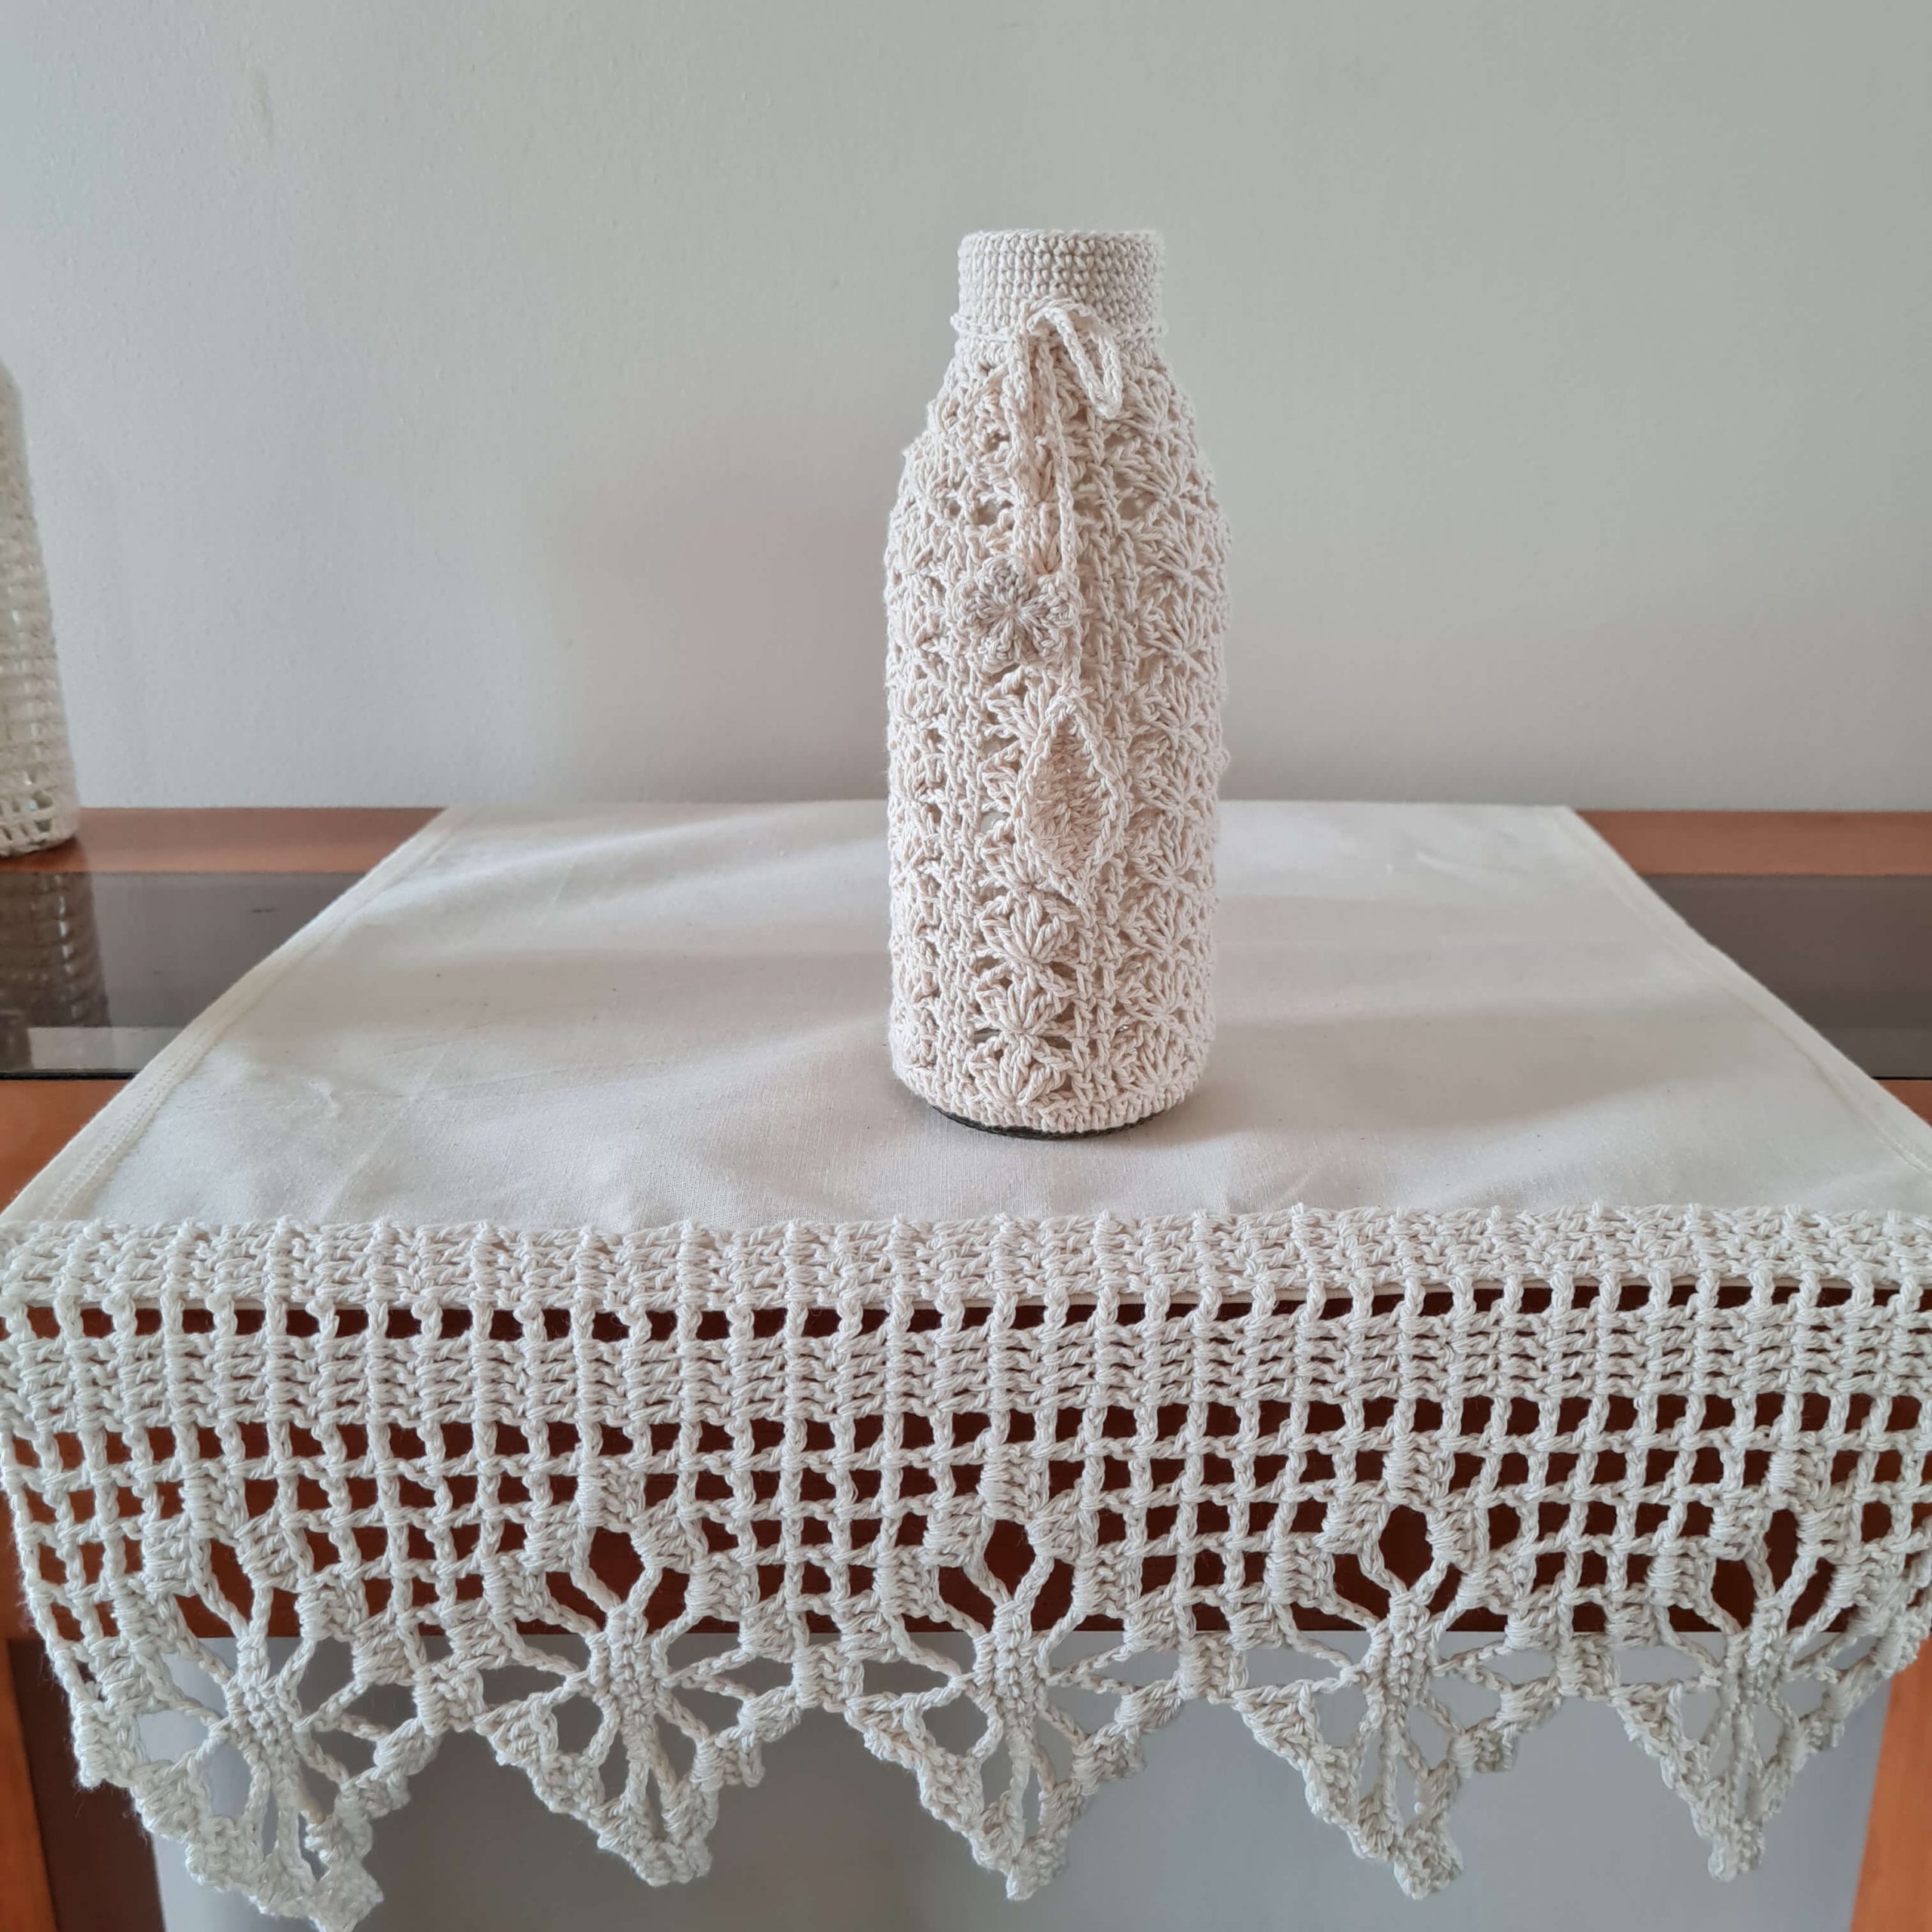 Botella decorada con tejido a crochet 2